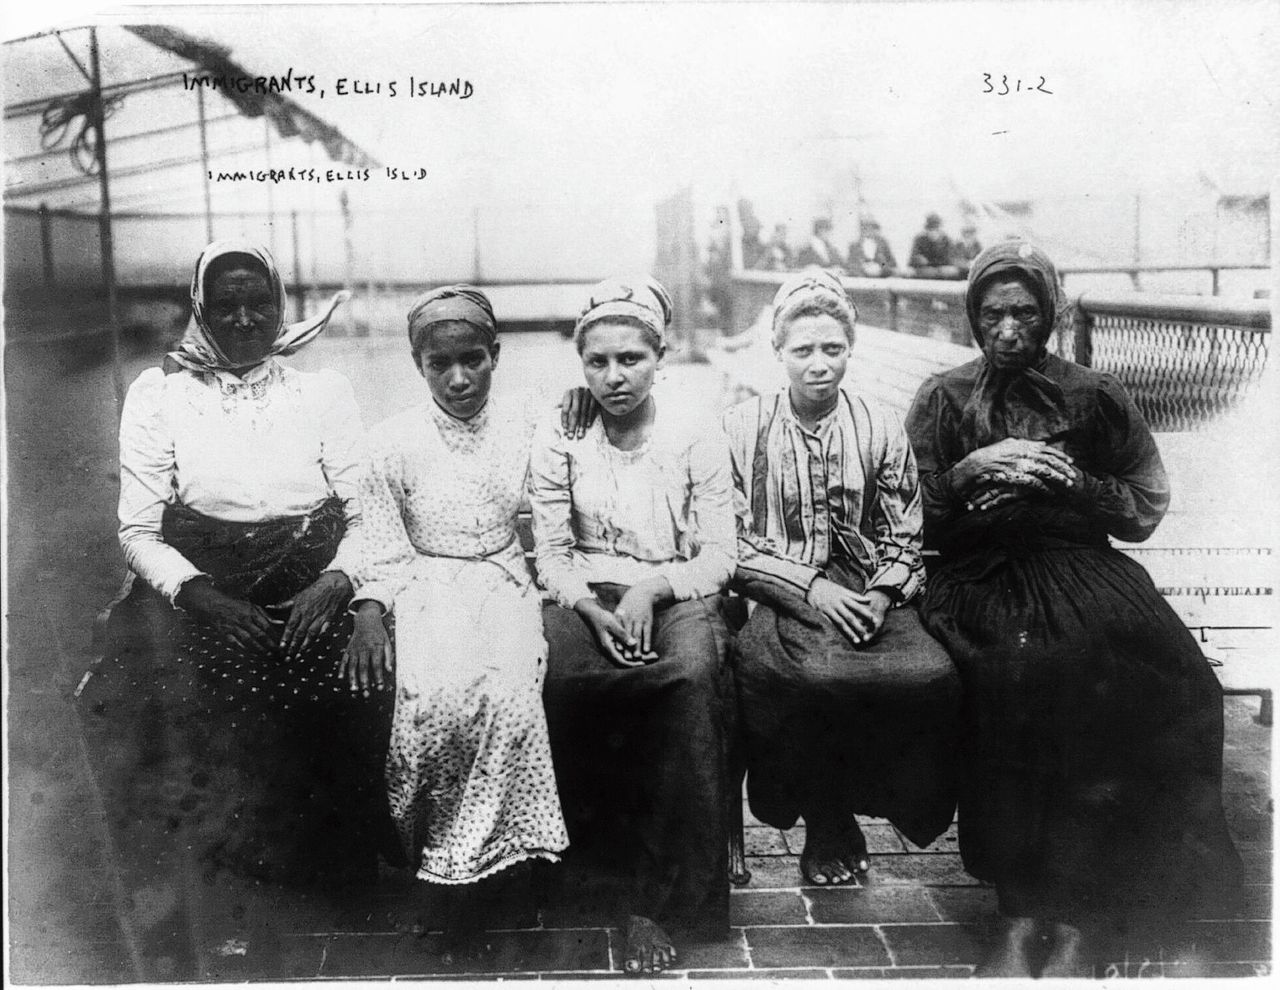 Vrouwen op Ellis Island bij New York, waar tussen 1892 en 1954 twaalf miljoen migranten de VS binnenkwamen.